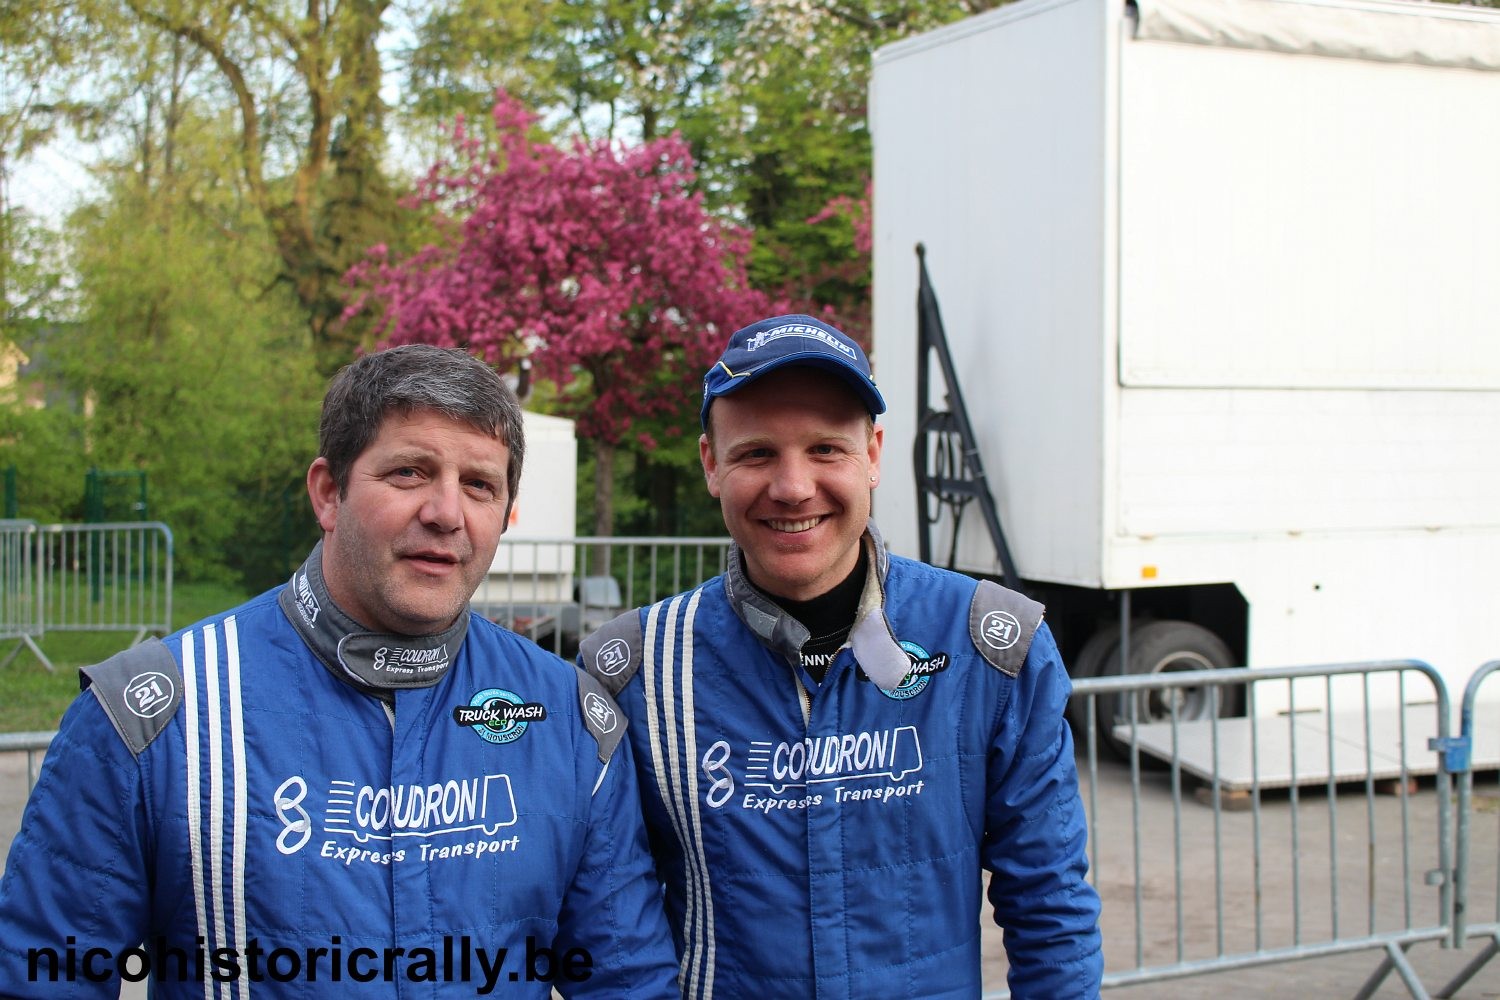 Wedstrijdverslag Rik Vanniewenhuyse en Kenny Deroo in de Rallye Salamandre.